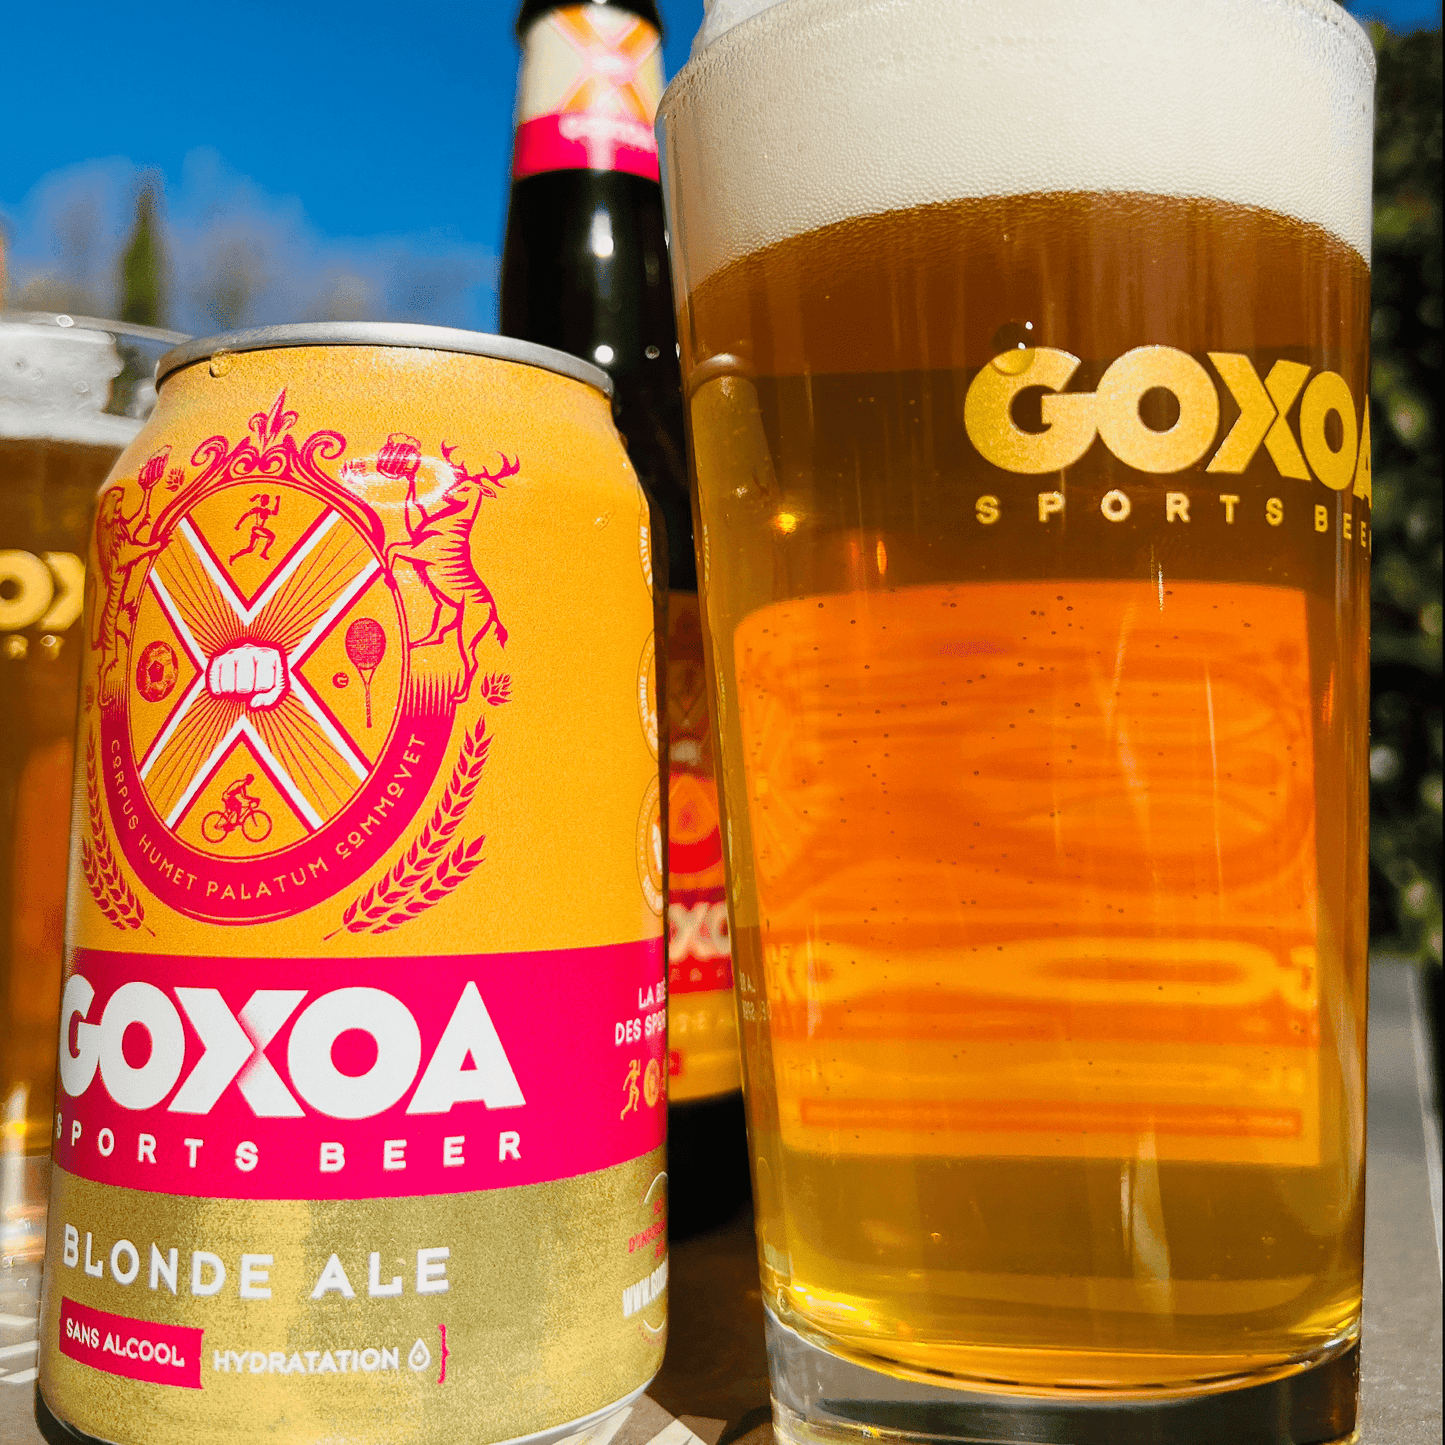 Canette de Goxoa Bière Blonde Ale - Goxoa